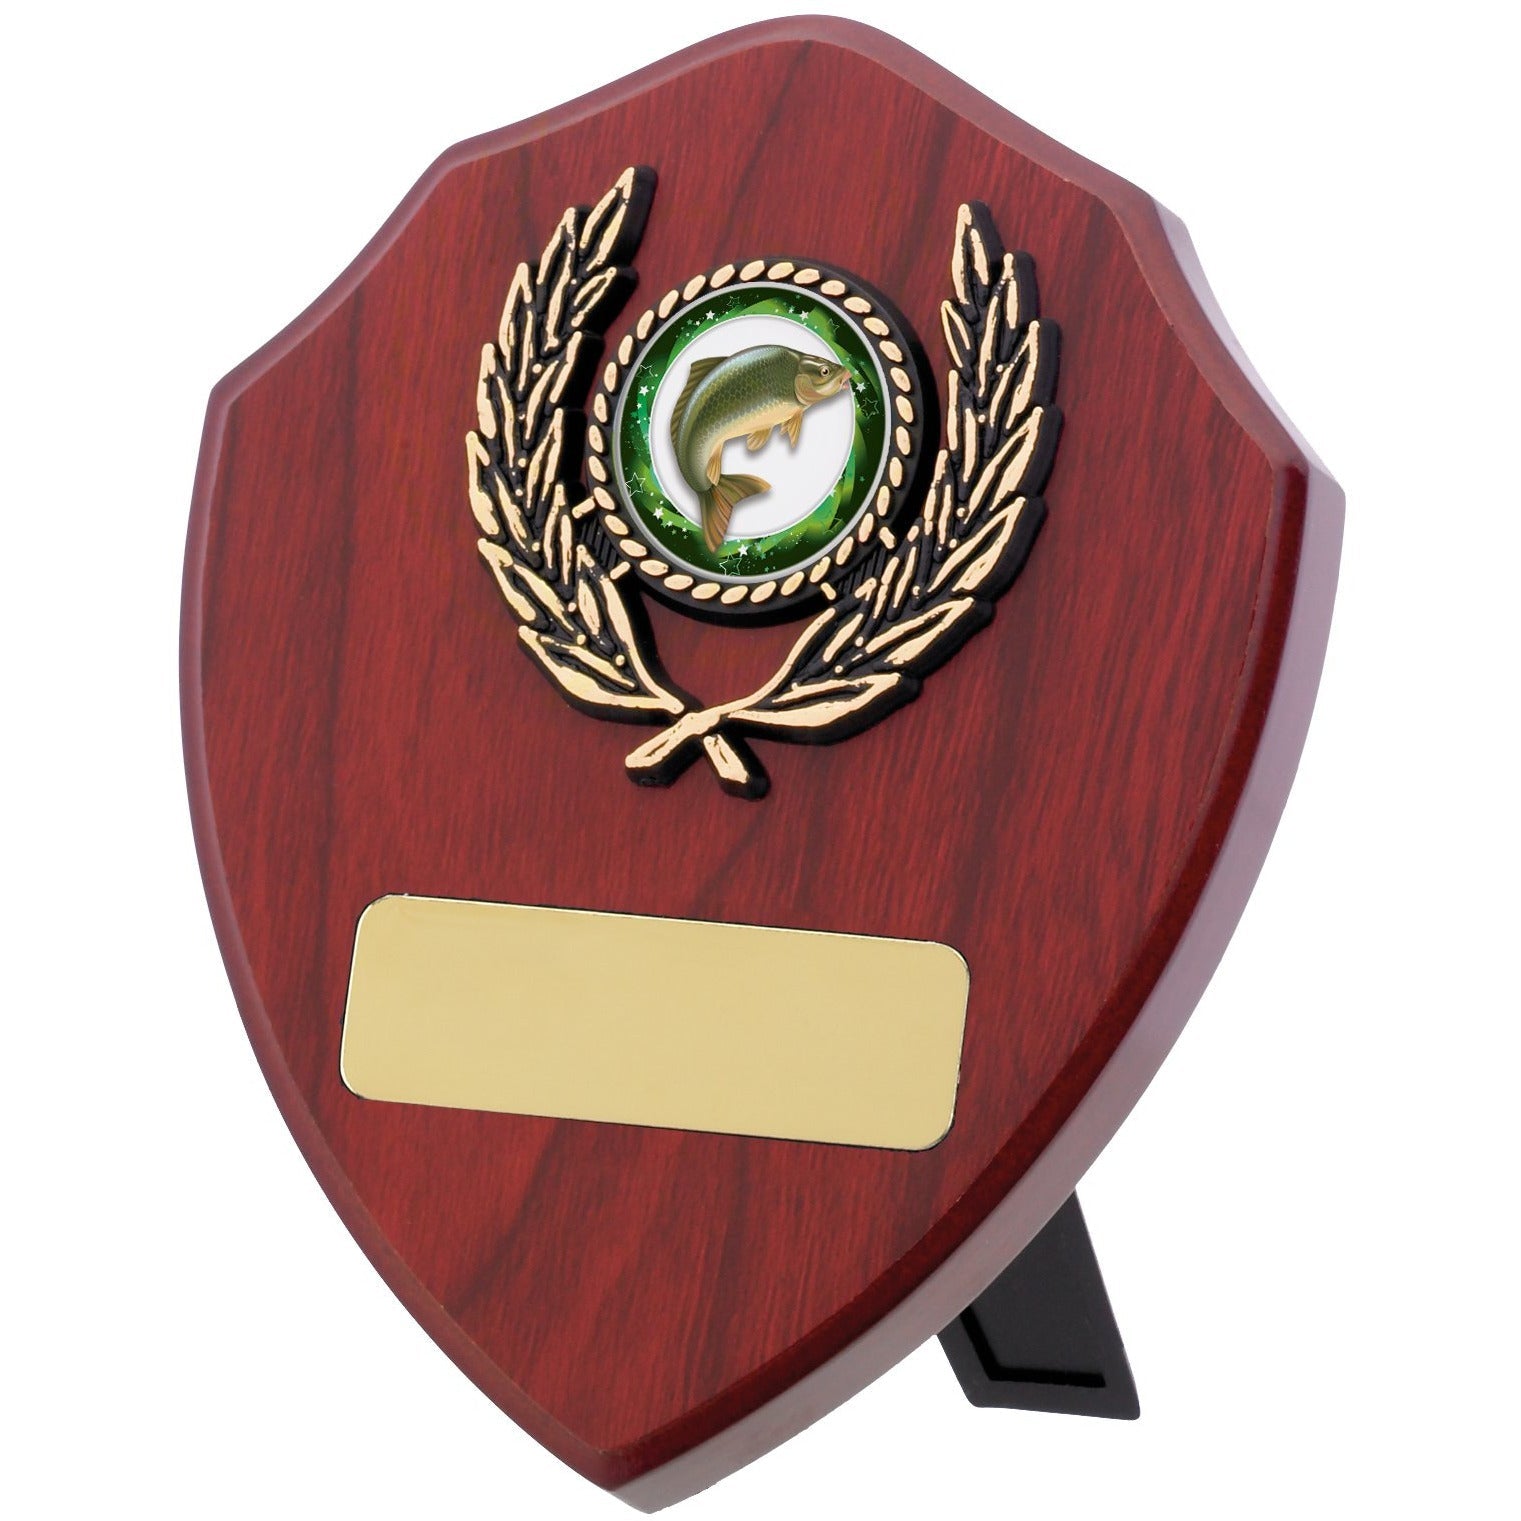 Mahogany Finish Shield Award